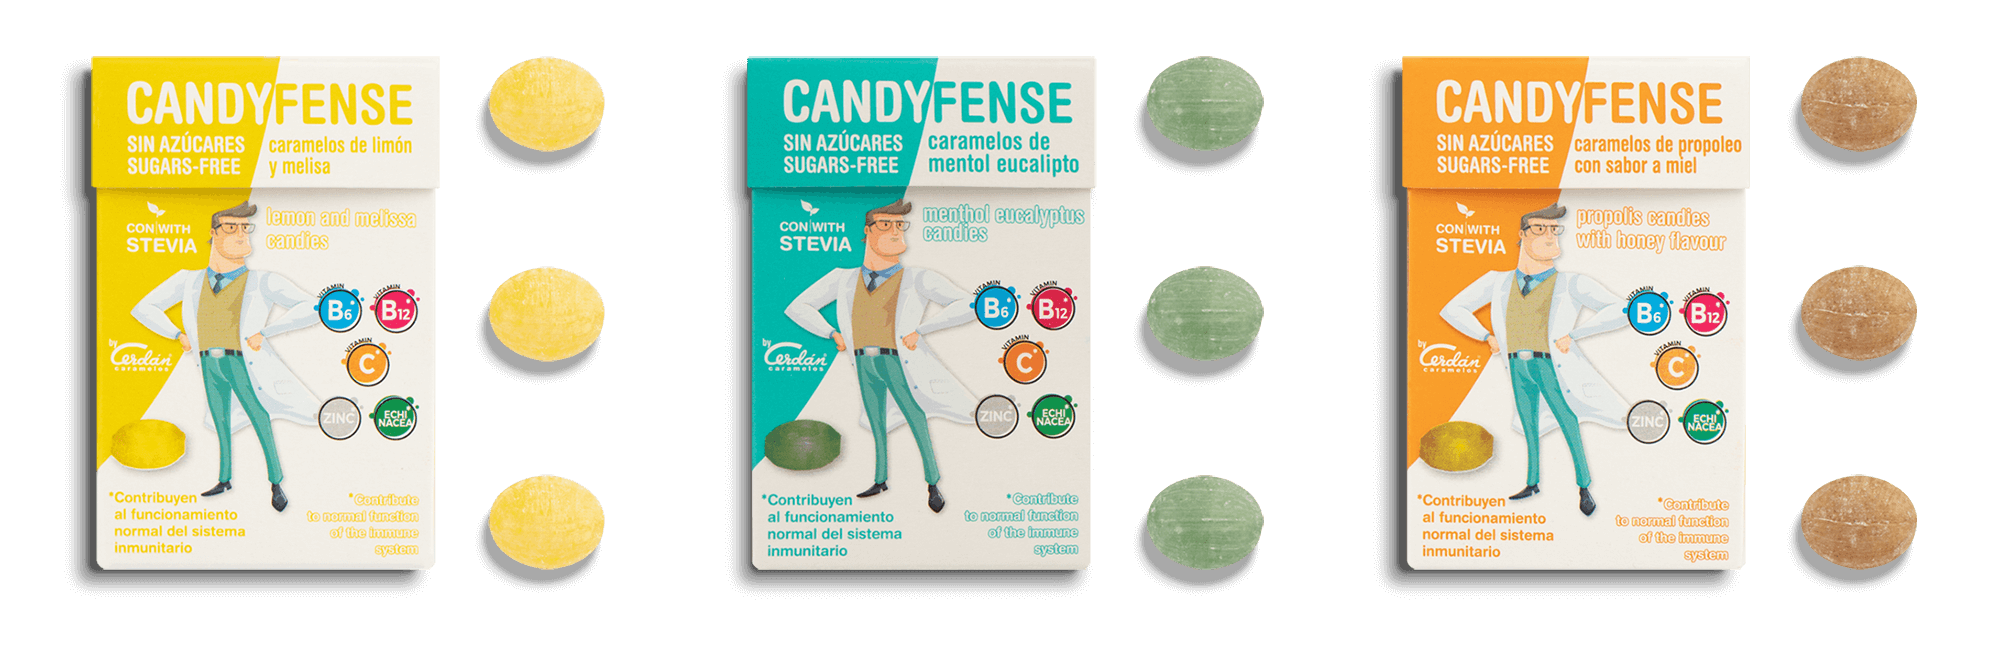 Candyfense-Adulto-en-cajitas